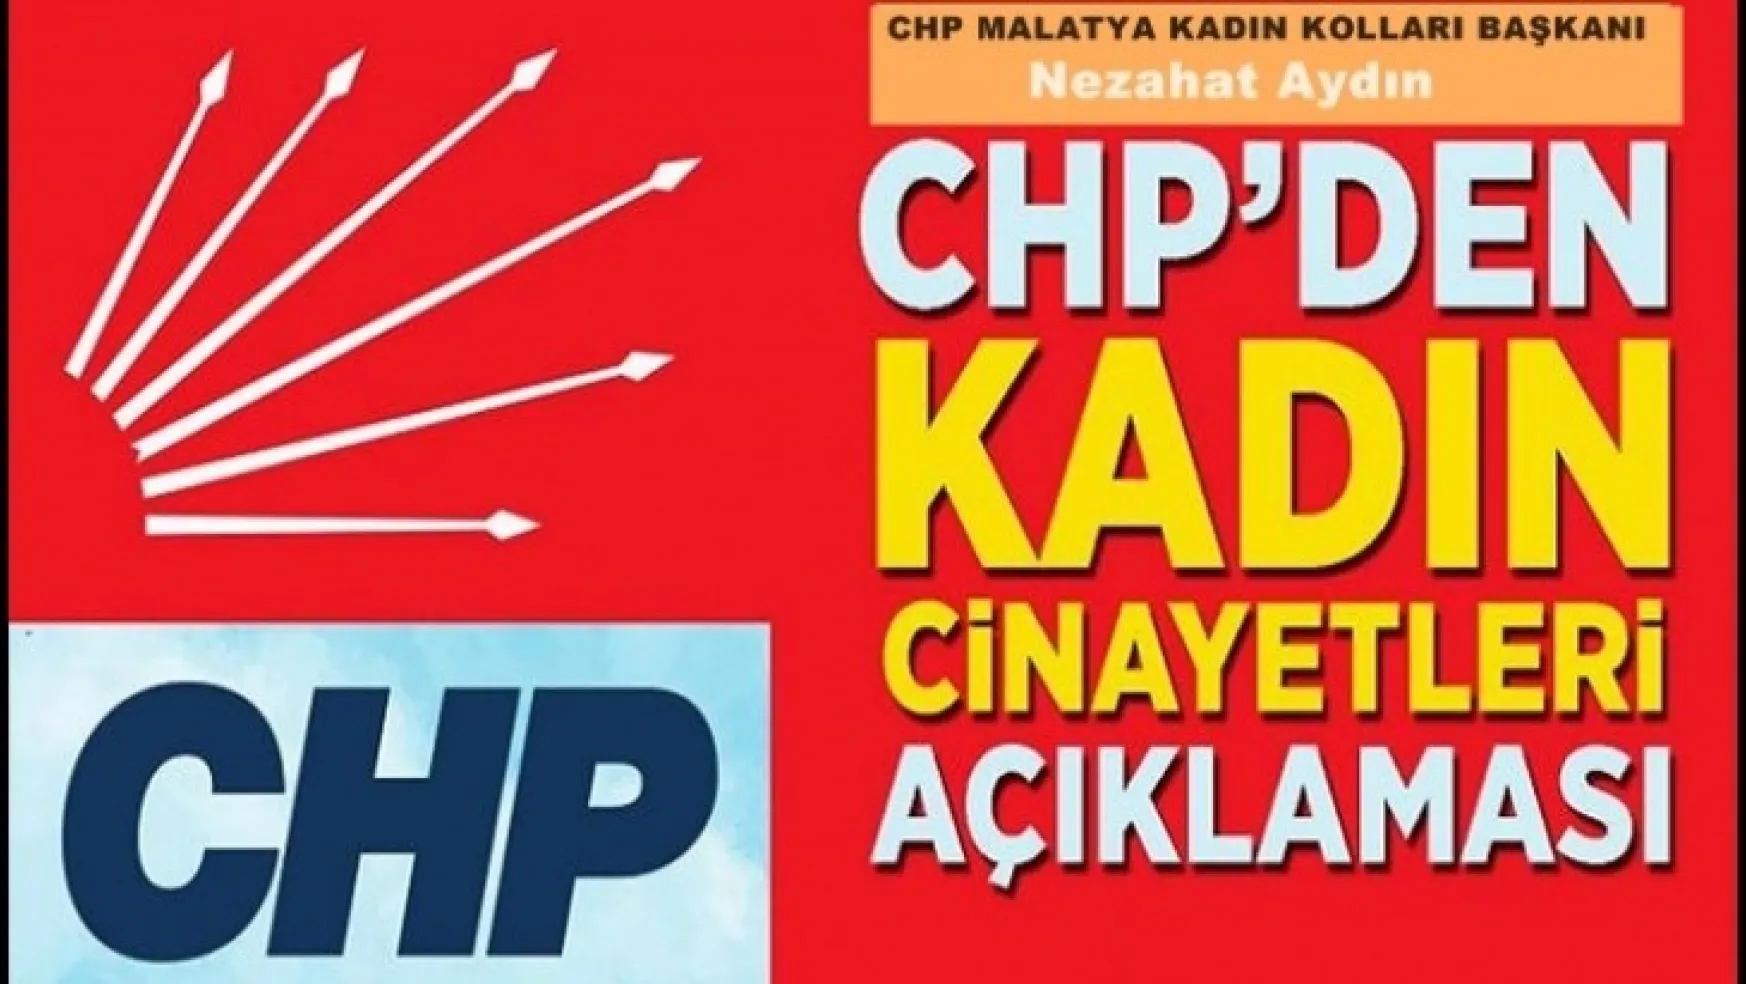 CHP Malatya Kadın Kollarından Kadın Cinayeti açıklaması